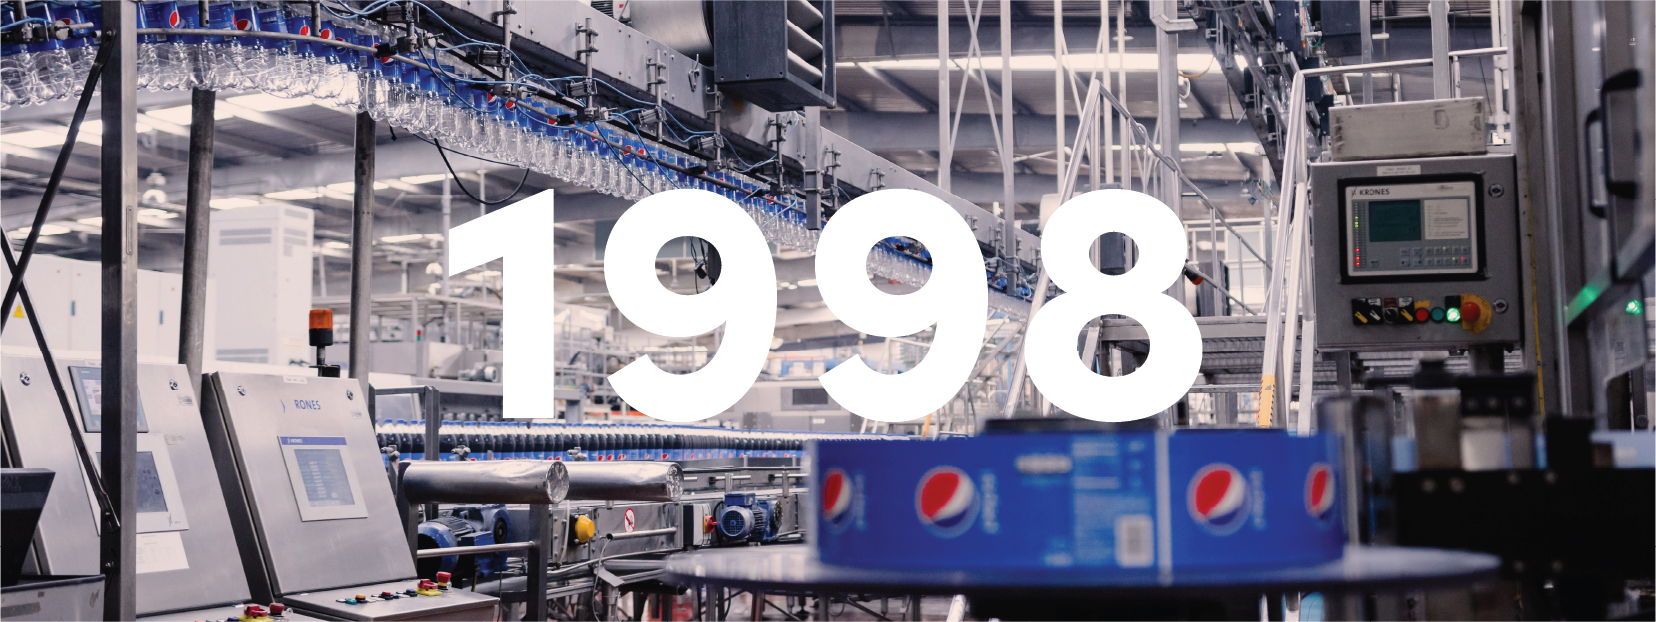 1998. Iniciamos la expansión internacional como Embotellador Ancla de PepsiCo.